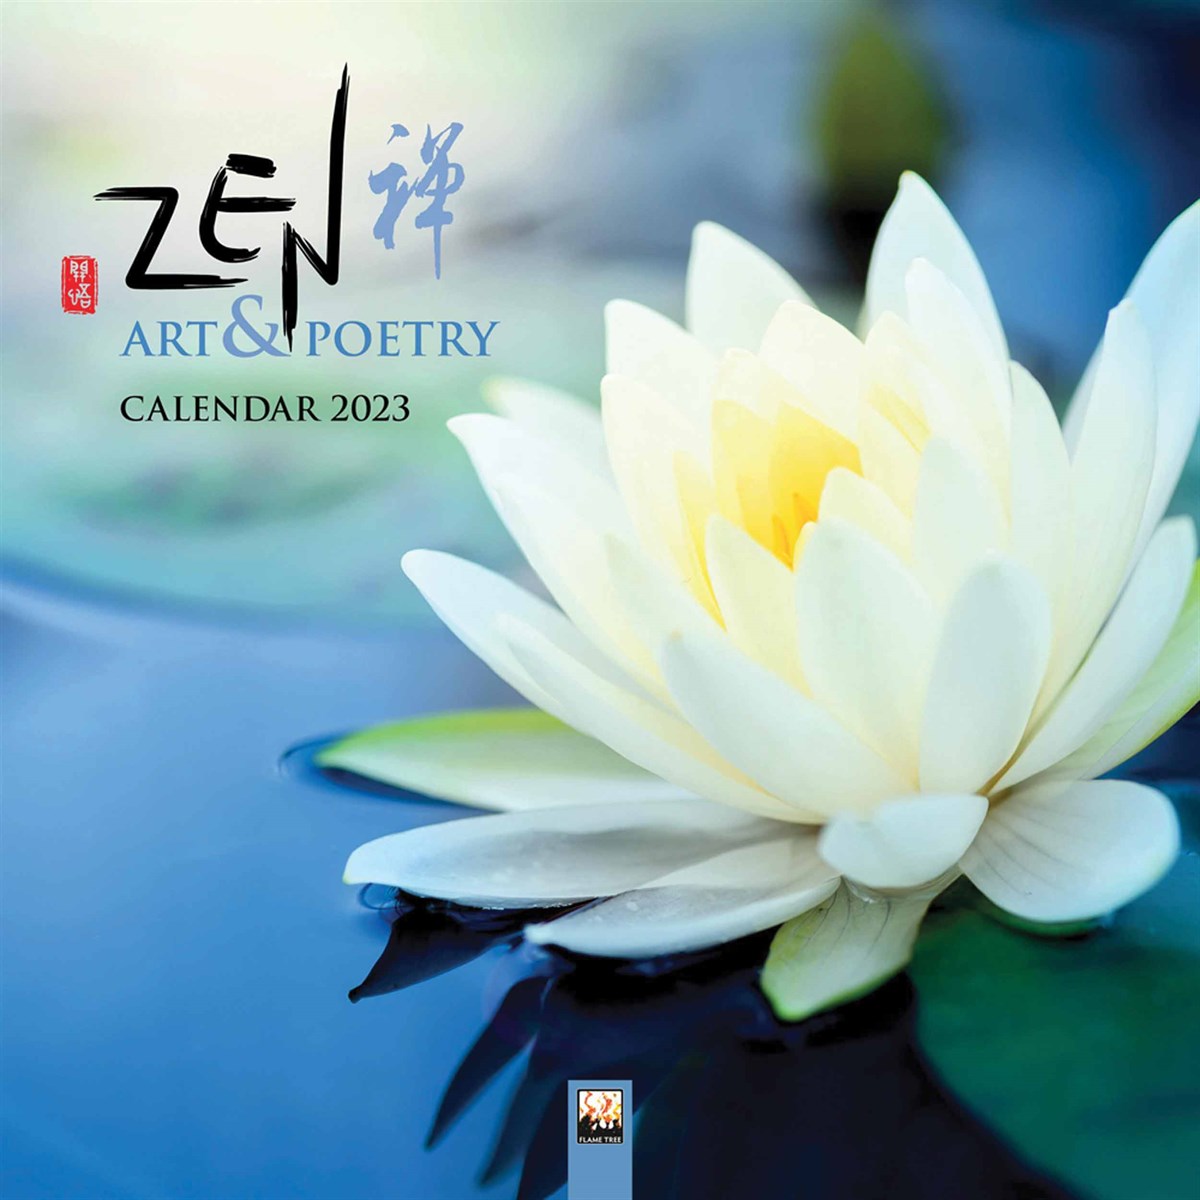 Zen Art & Poetry 2023 Calendars